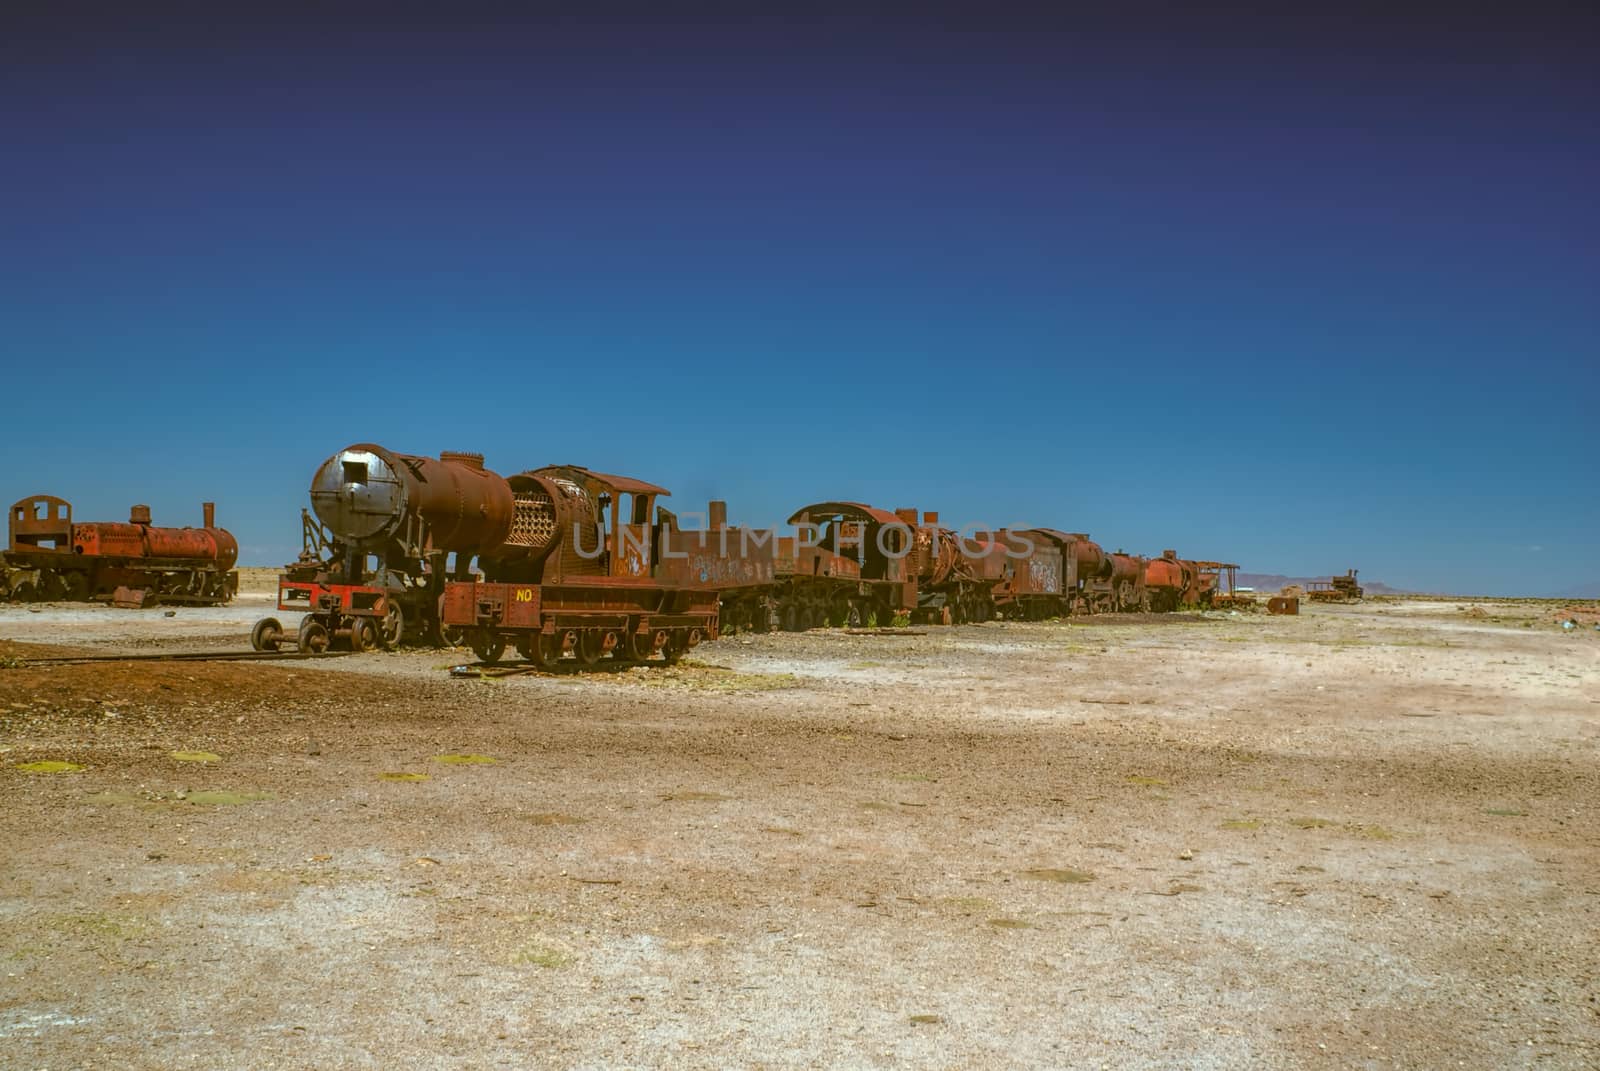 Old locomotive graveyard in desert near Salar de Uyuni in Bolivia          